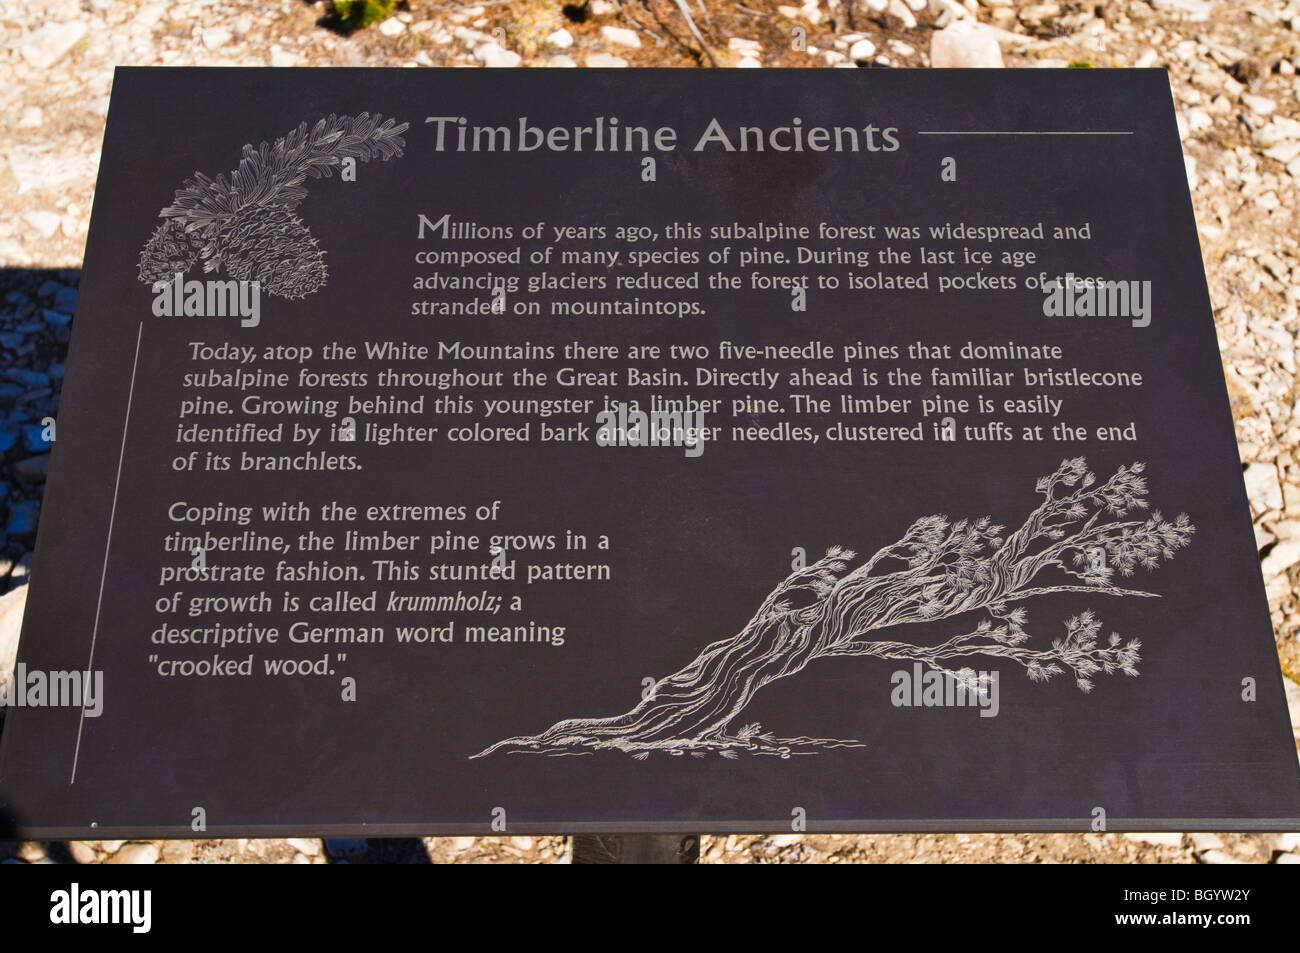 Interpretierende Zeichen bei der Patriarch Grove, Ancient Bristlecone Pine Forest, Inyo National Forest, White Mountains, Kalifornien Stockfoto